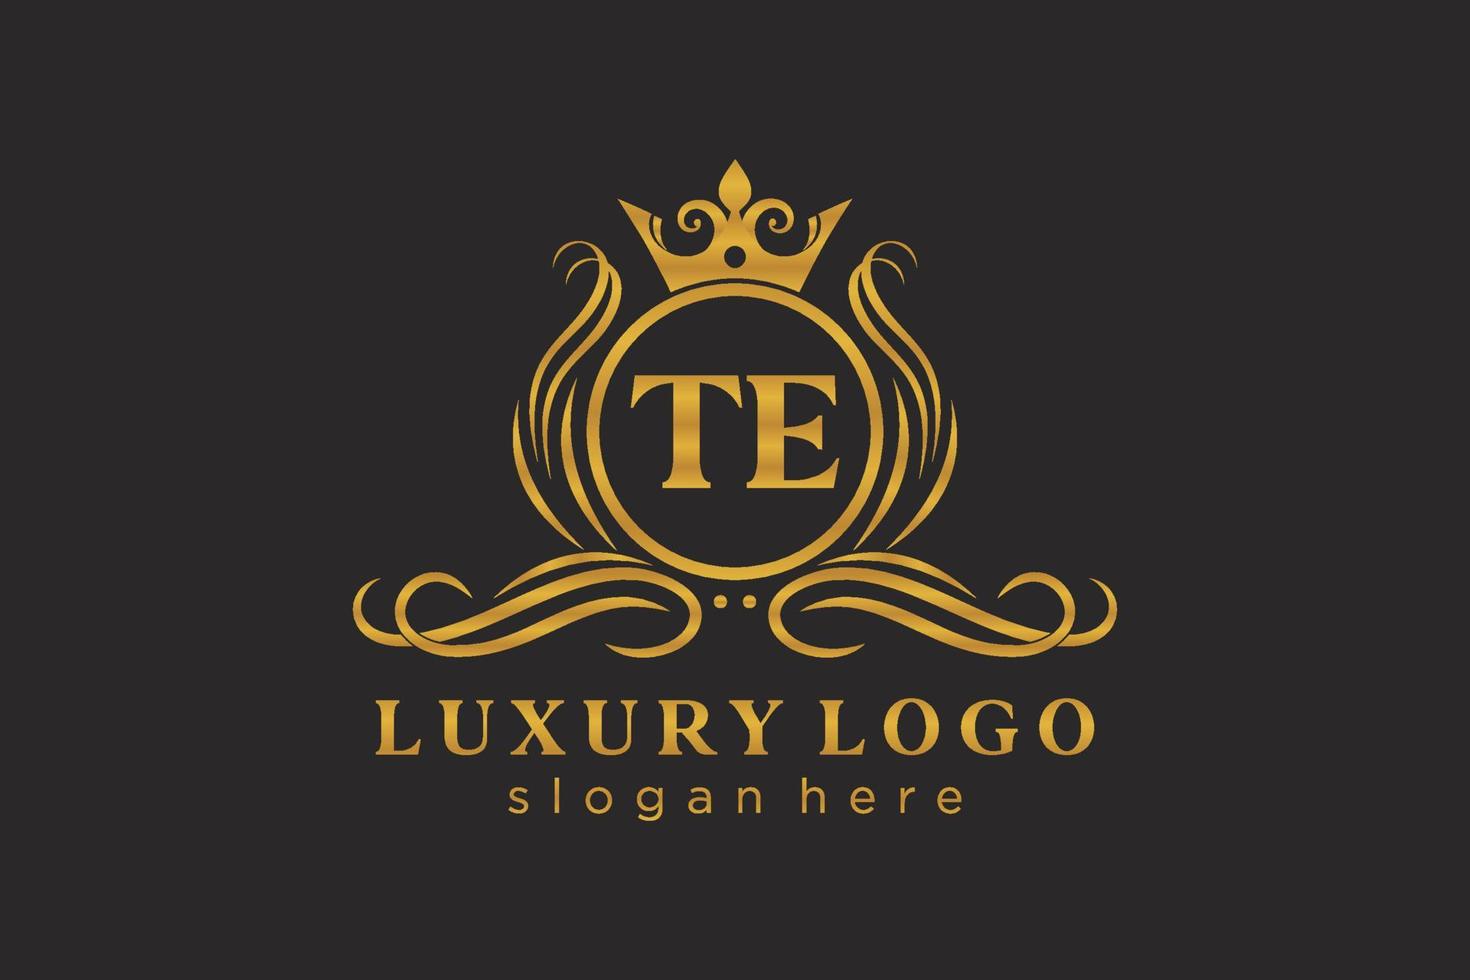 modèle de logo de luxe royal de lettre te initiale dans l'art vectoriel pour le restaurant, la royauté, la boutique, le café, l'hôtel, l'héraldique, les bijoux, la mode et d'autres illustrations vectorielles.